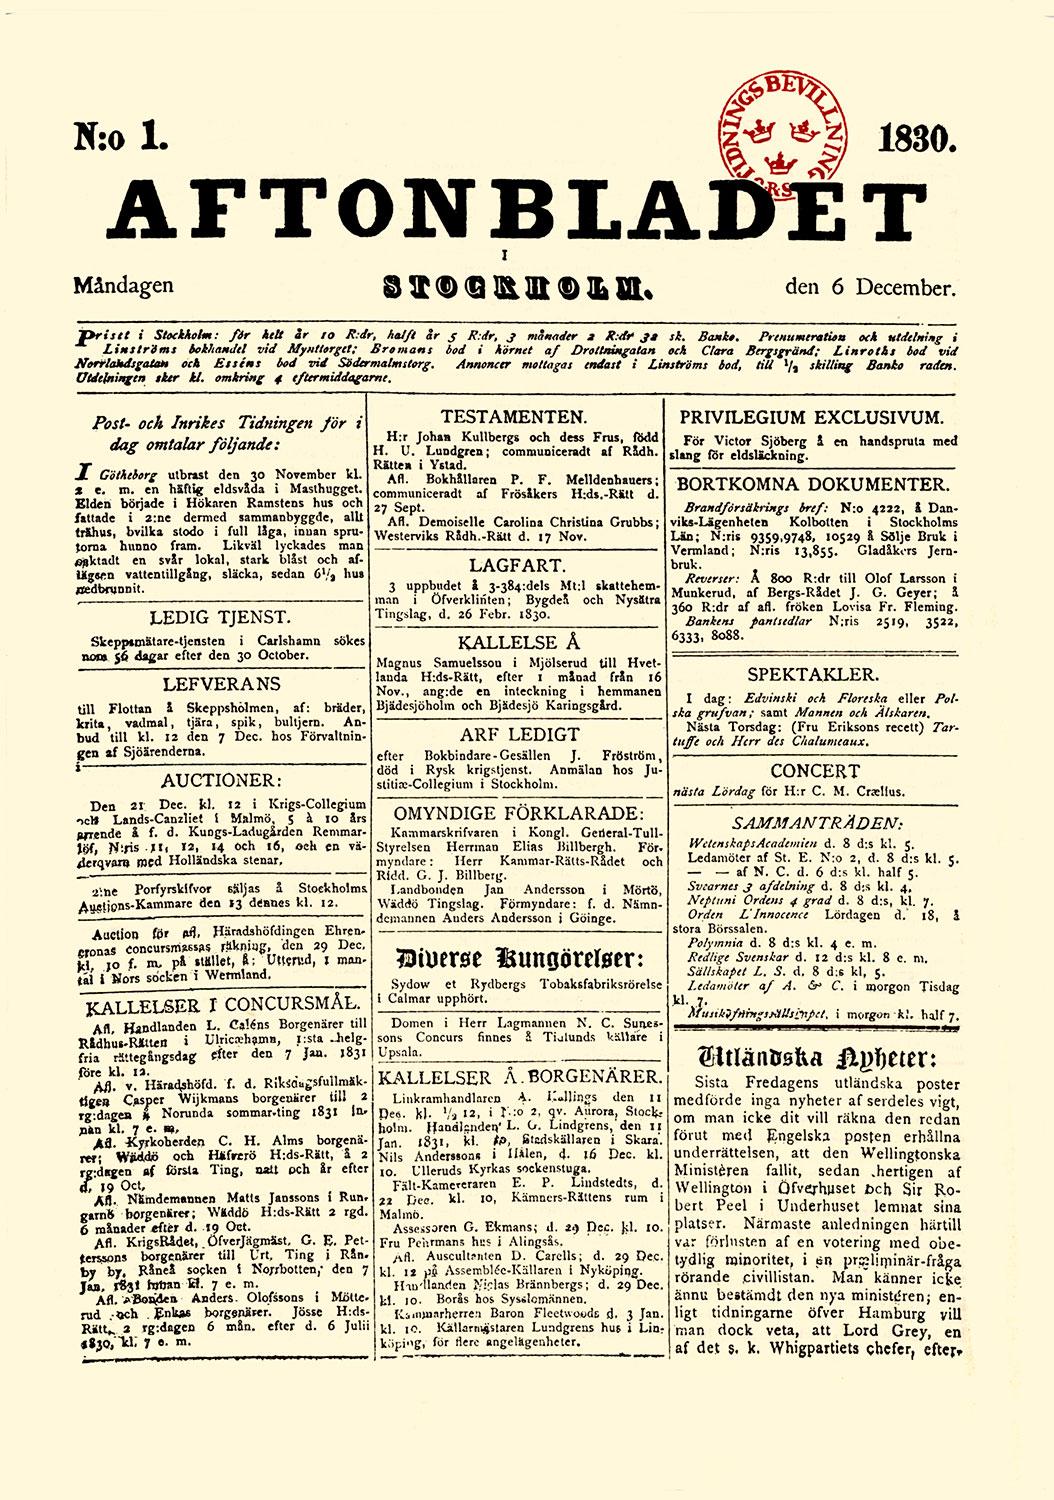 Premiär! Här är första numret av Aftonbladet från 1830.